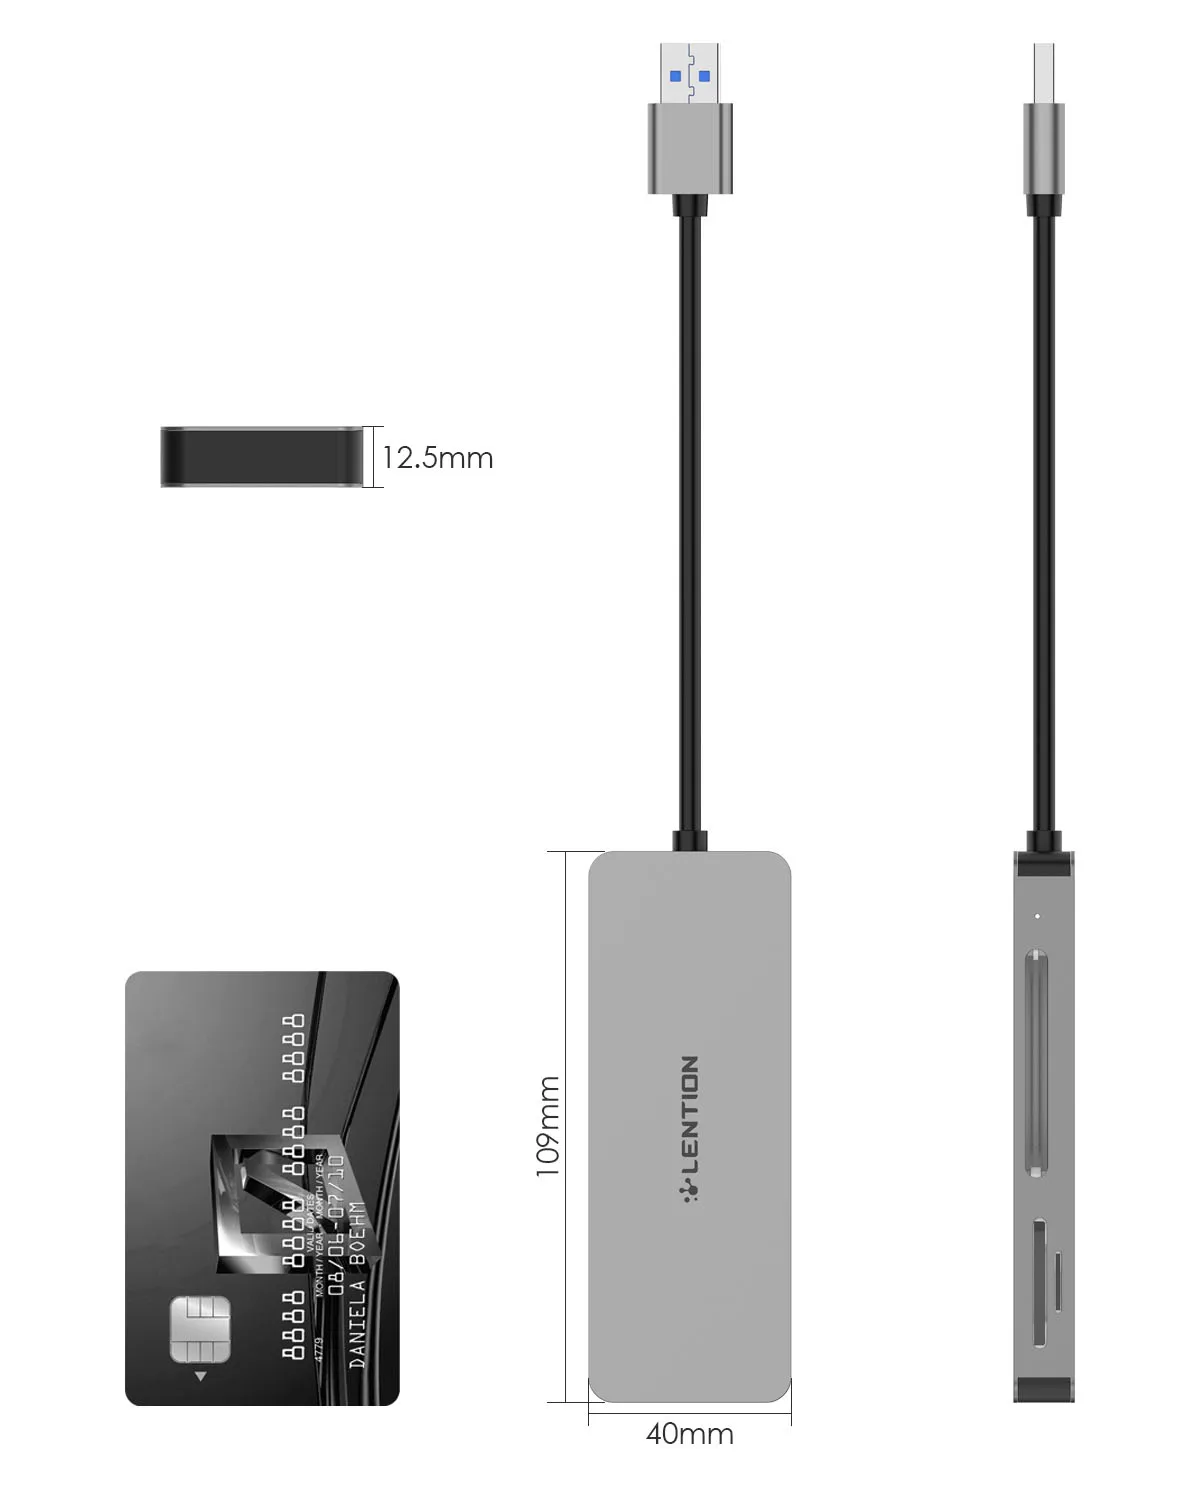 USB 3.0 pentru a CF/SD/Micro Cititor de Card SD, SD 3.0 Adaptor de Card pentru SD/SDHC/SDXC/MMC/RS-MMC/Micro SD/Micro SDHC/Micro SDXC/CF Tip I